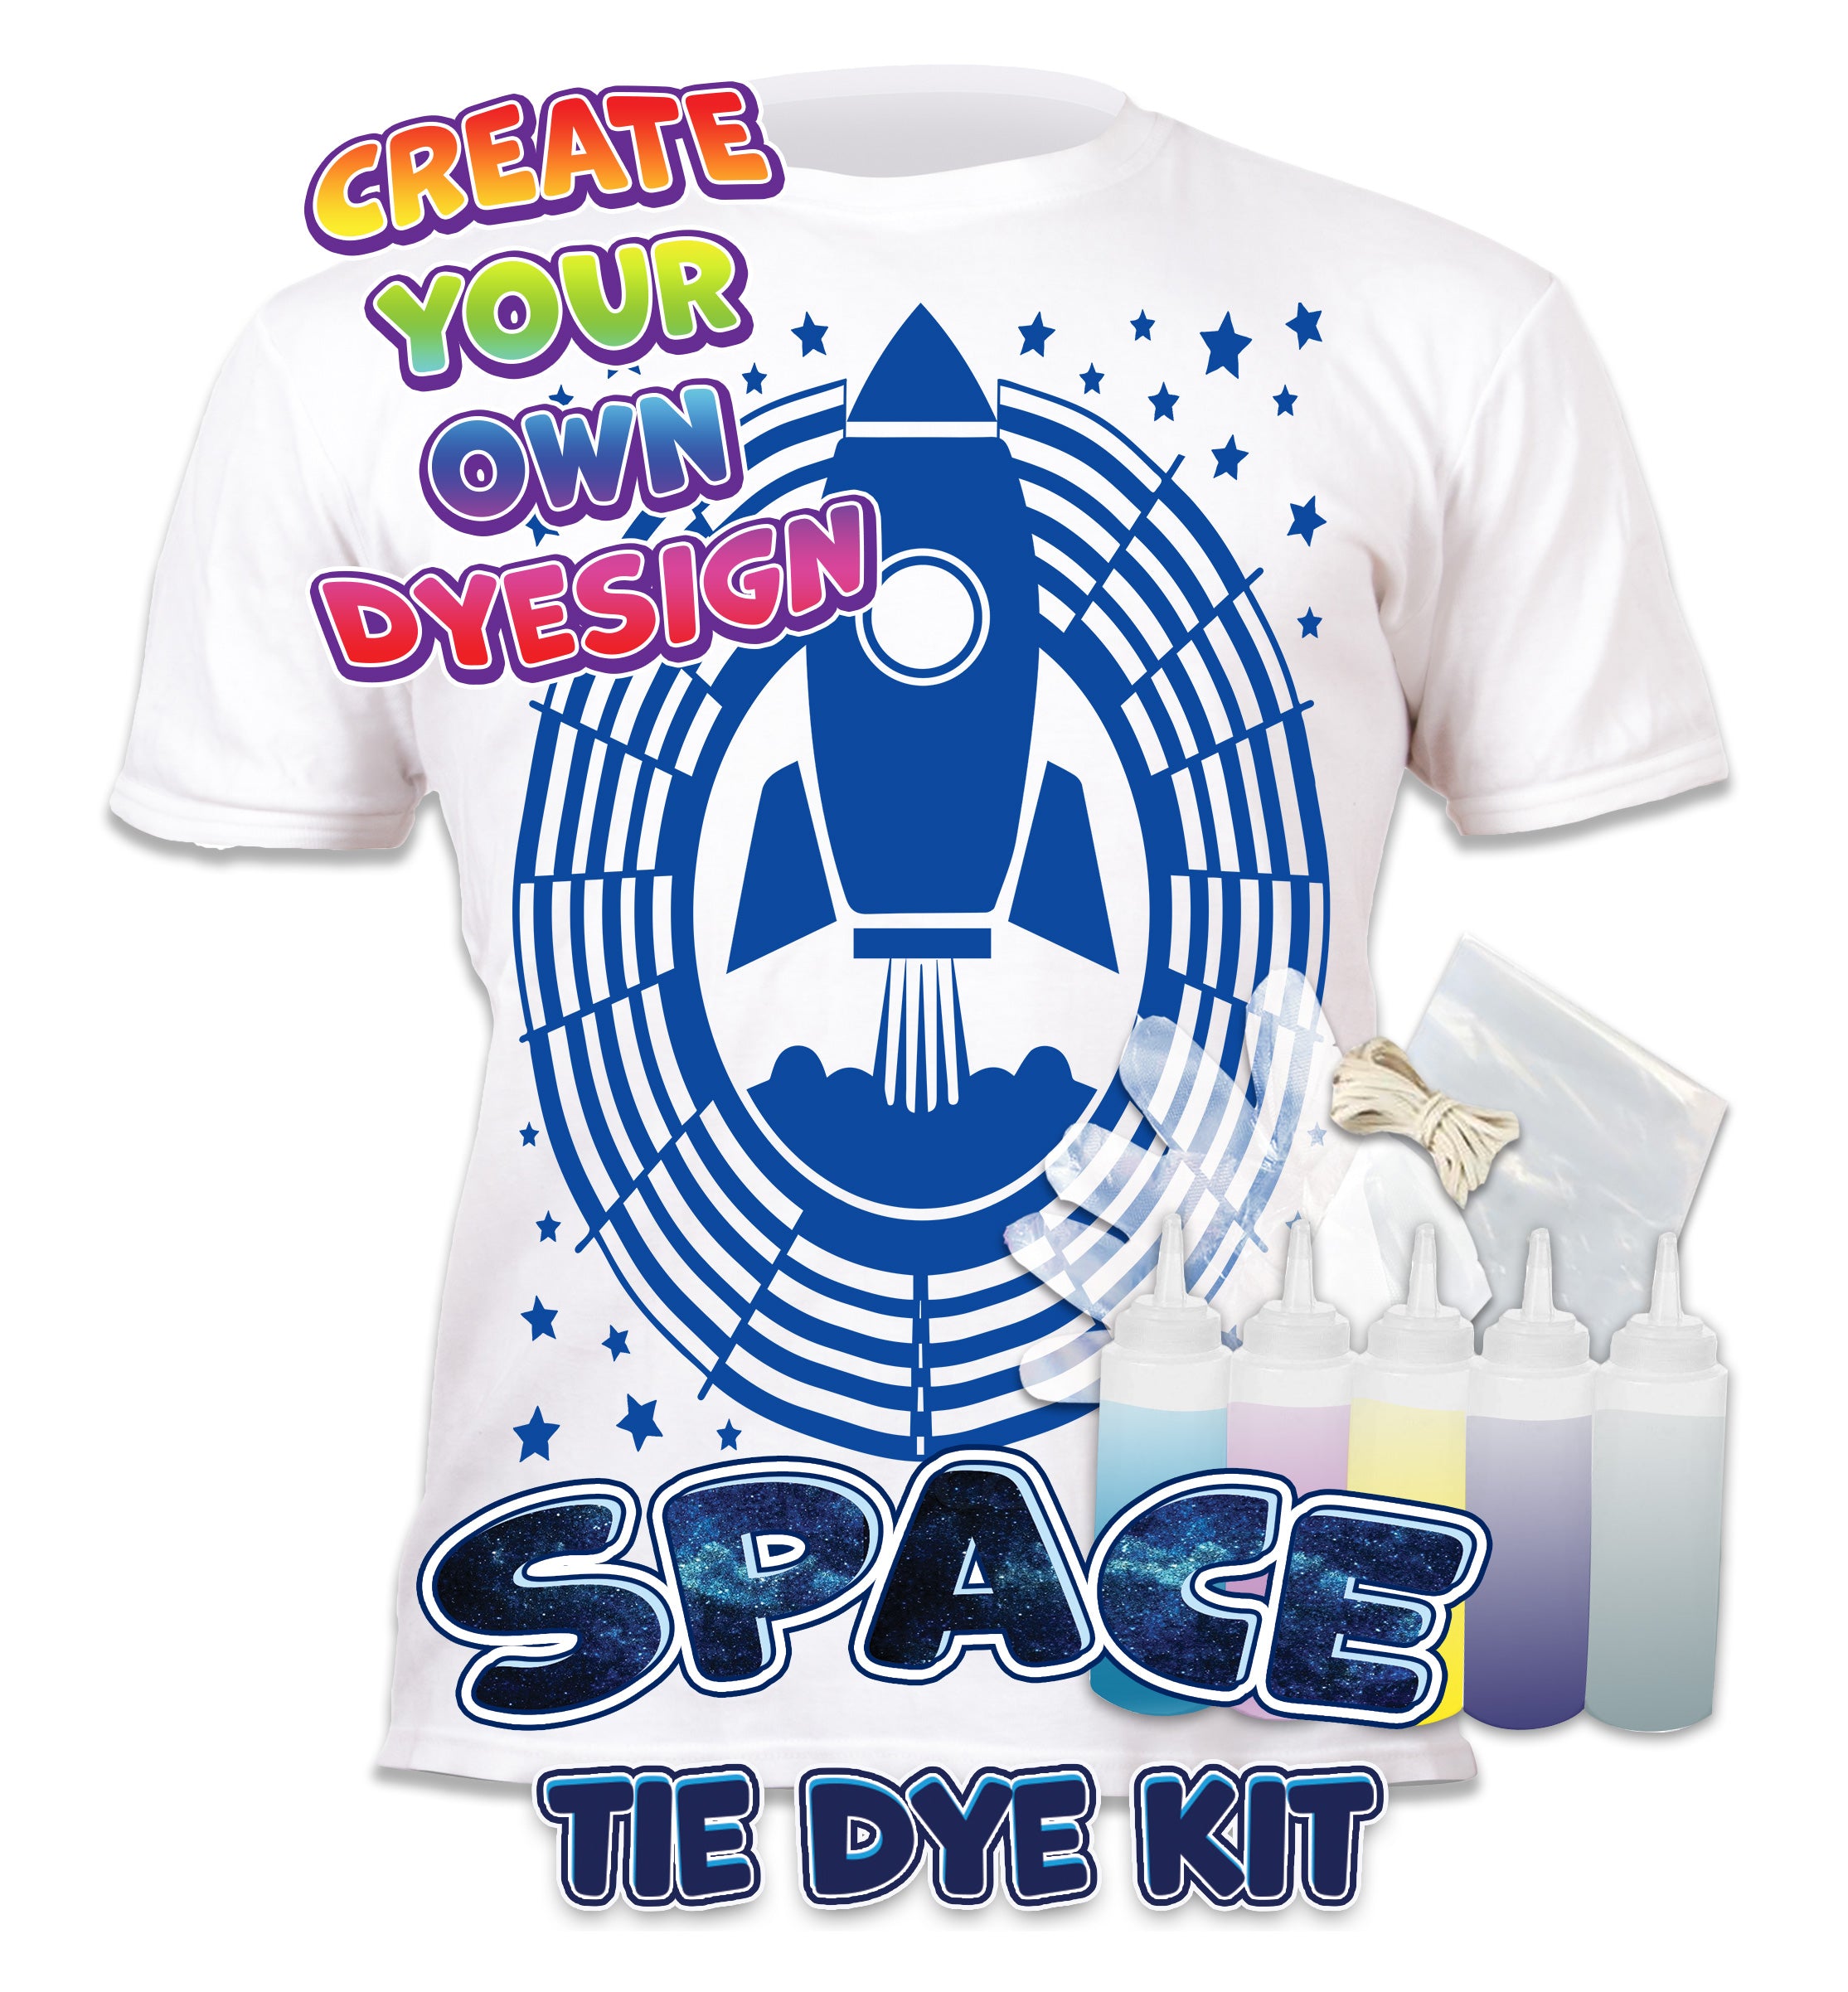 Tie Dye Kit, Vibrant Tie Dye T Shirt, magic Tie Dye kit, Space T shirt, kids tie dye kit, kids tie dye t-shirt, Space t-shirt for boys, create your own t-shirt, Space gifts for boys, Space T-shirt